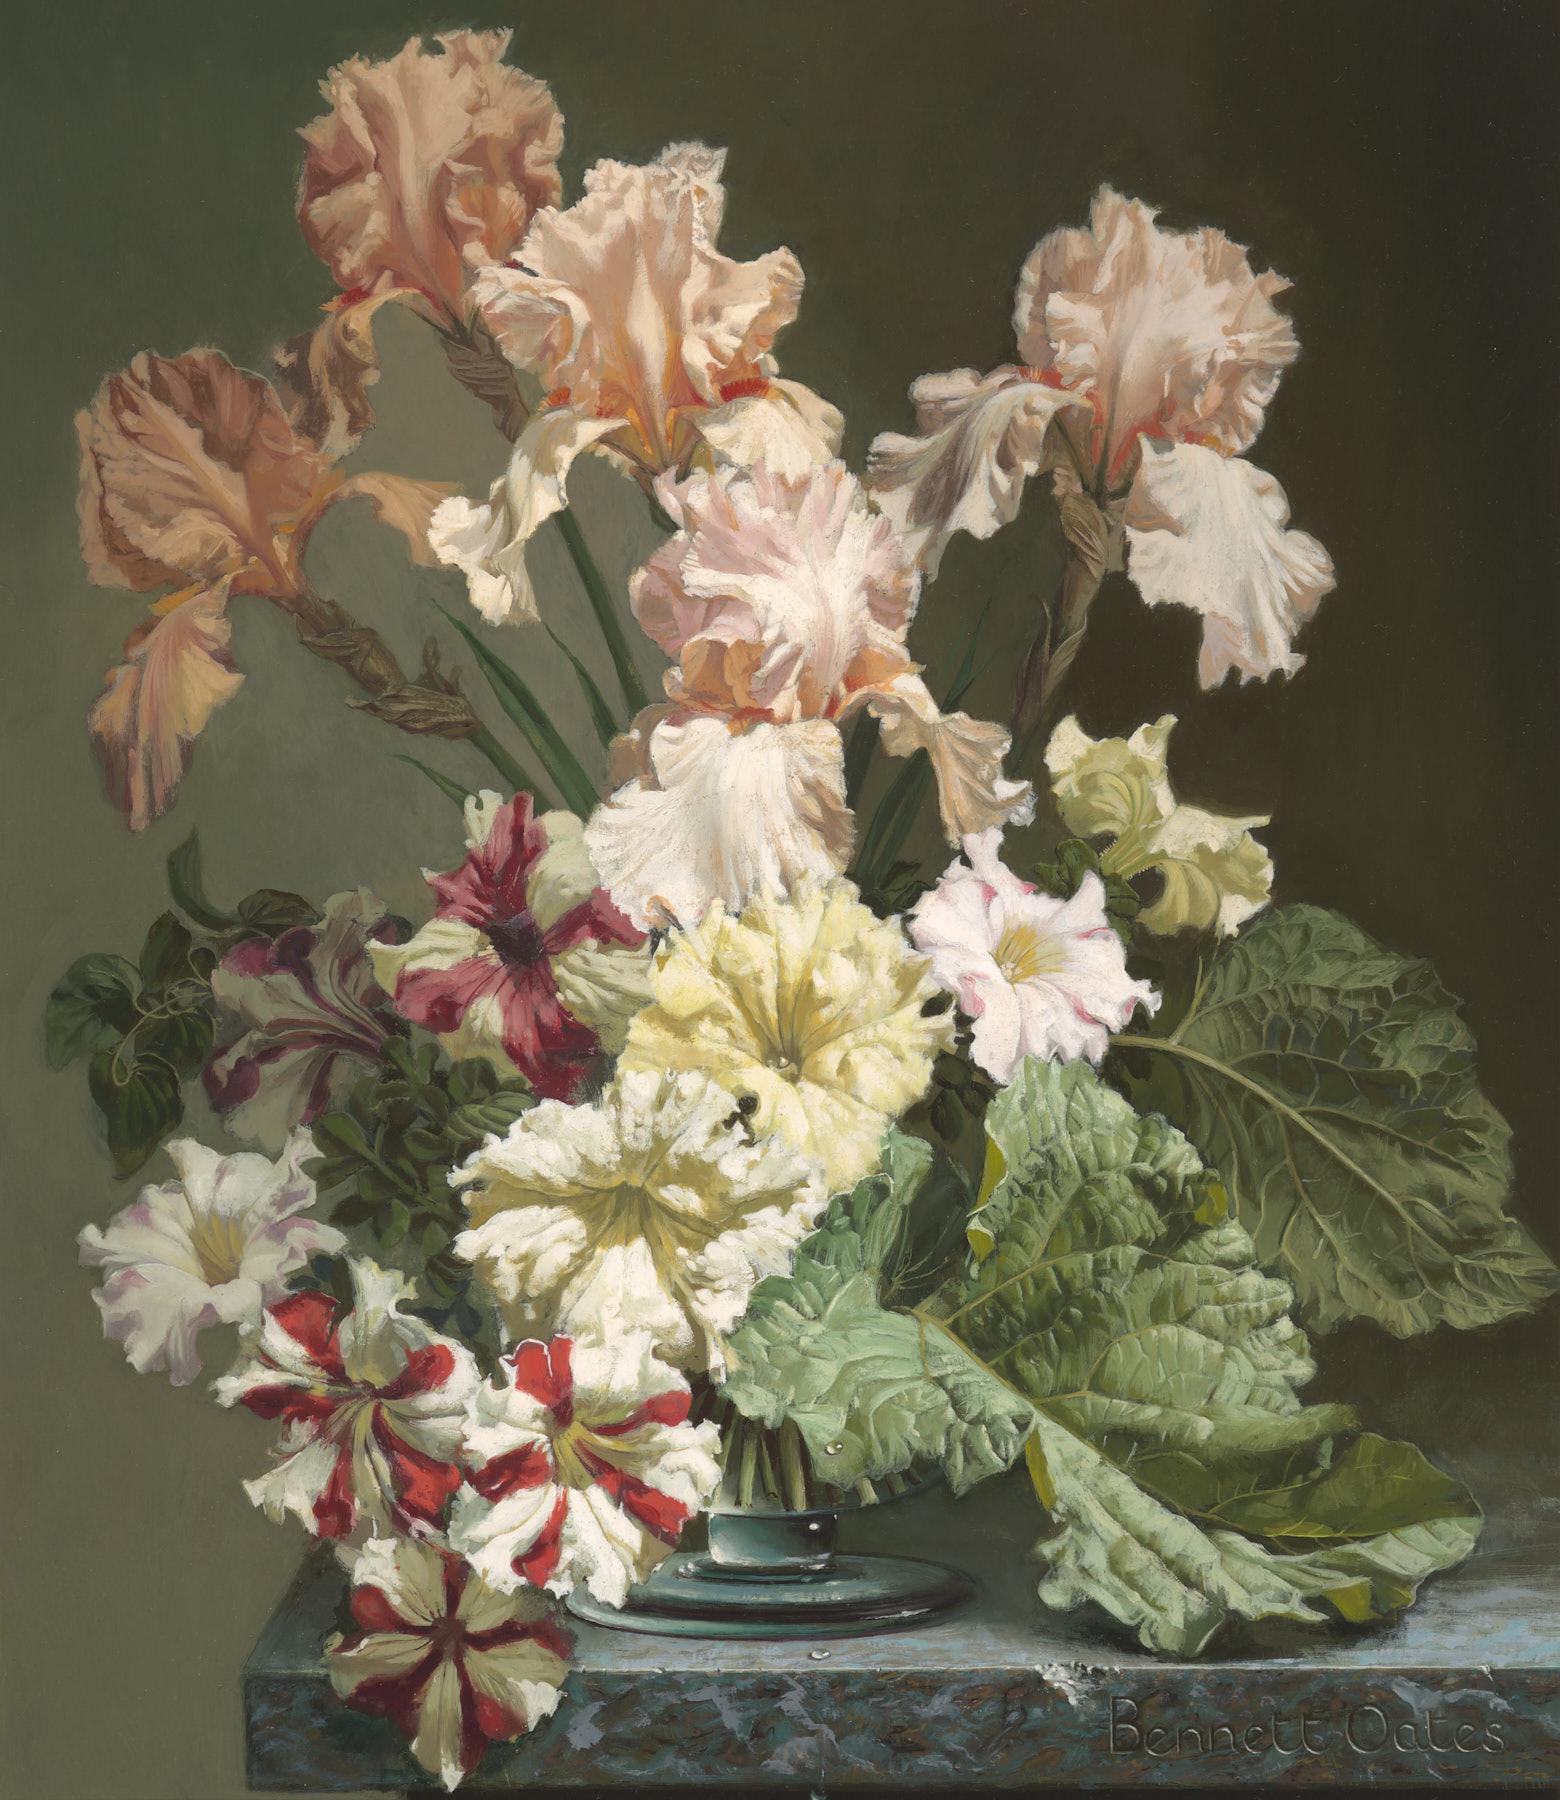 Bennett Oates | Iris & Petunias